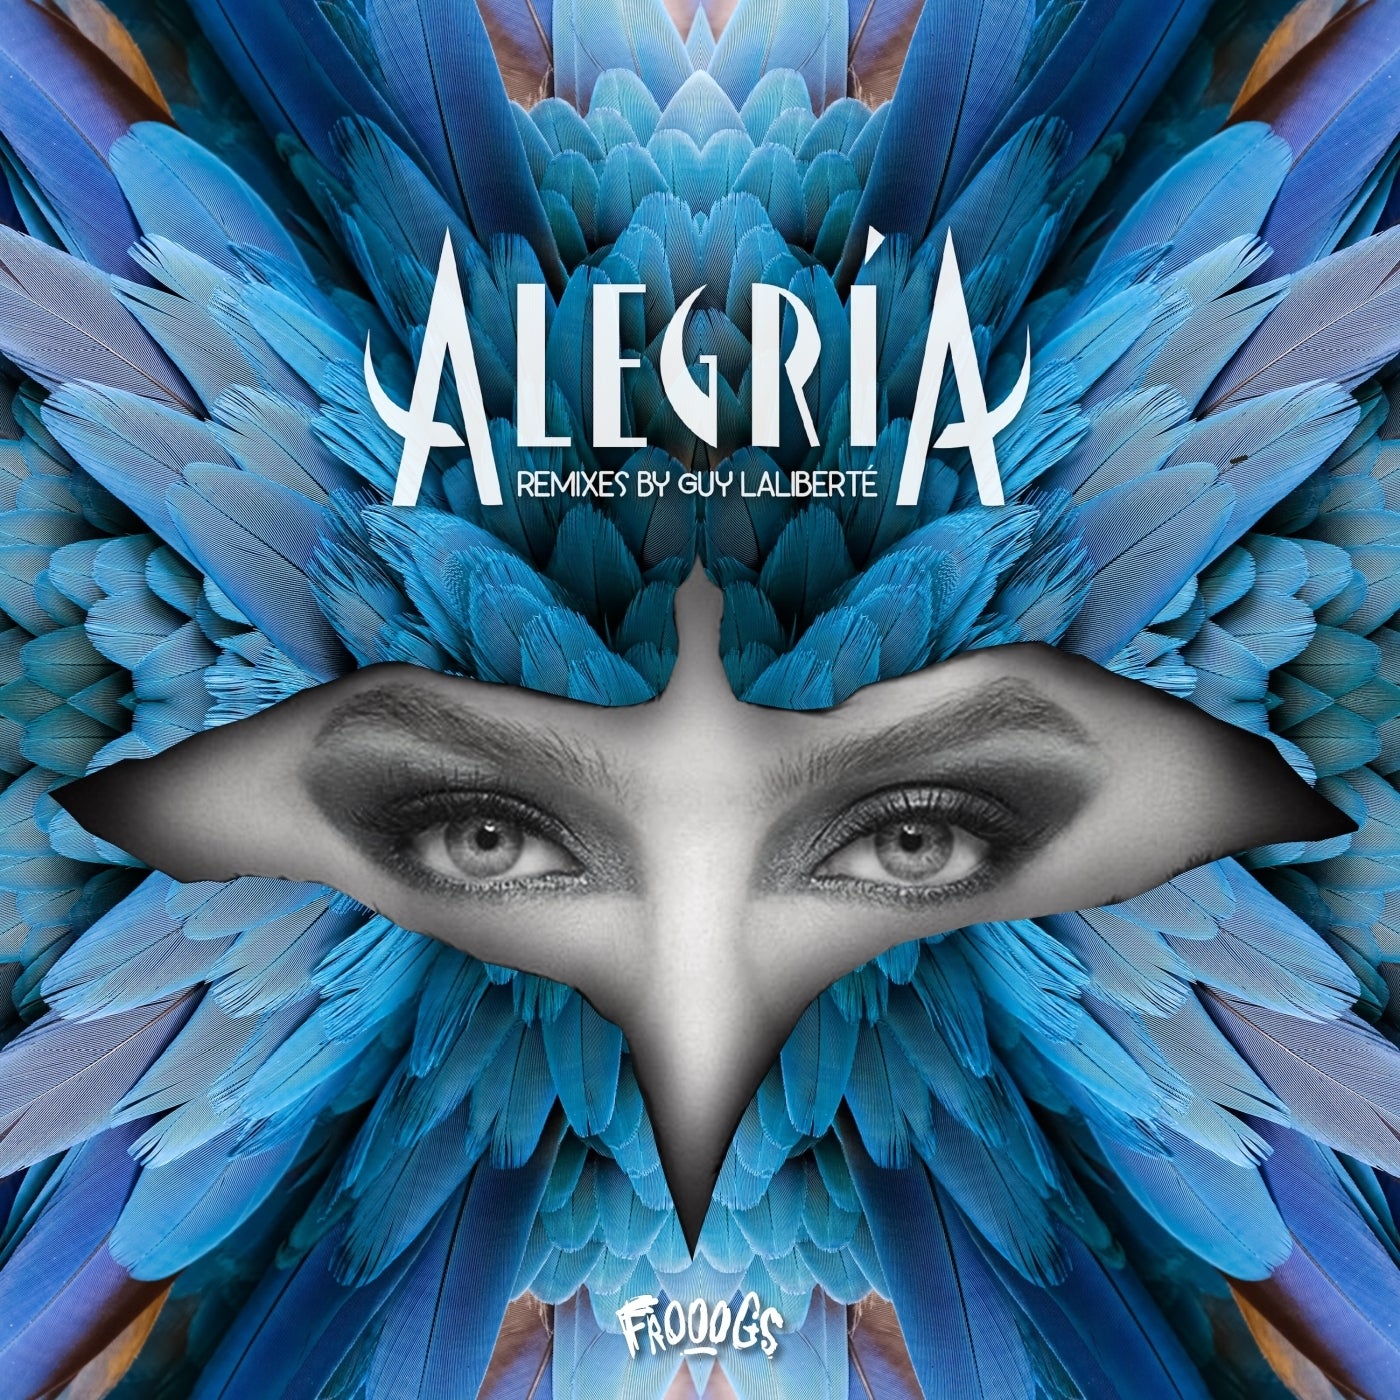 Alegria Remixes by Guy Laliberte